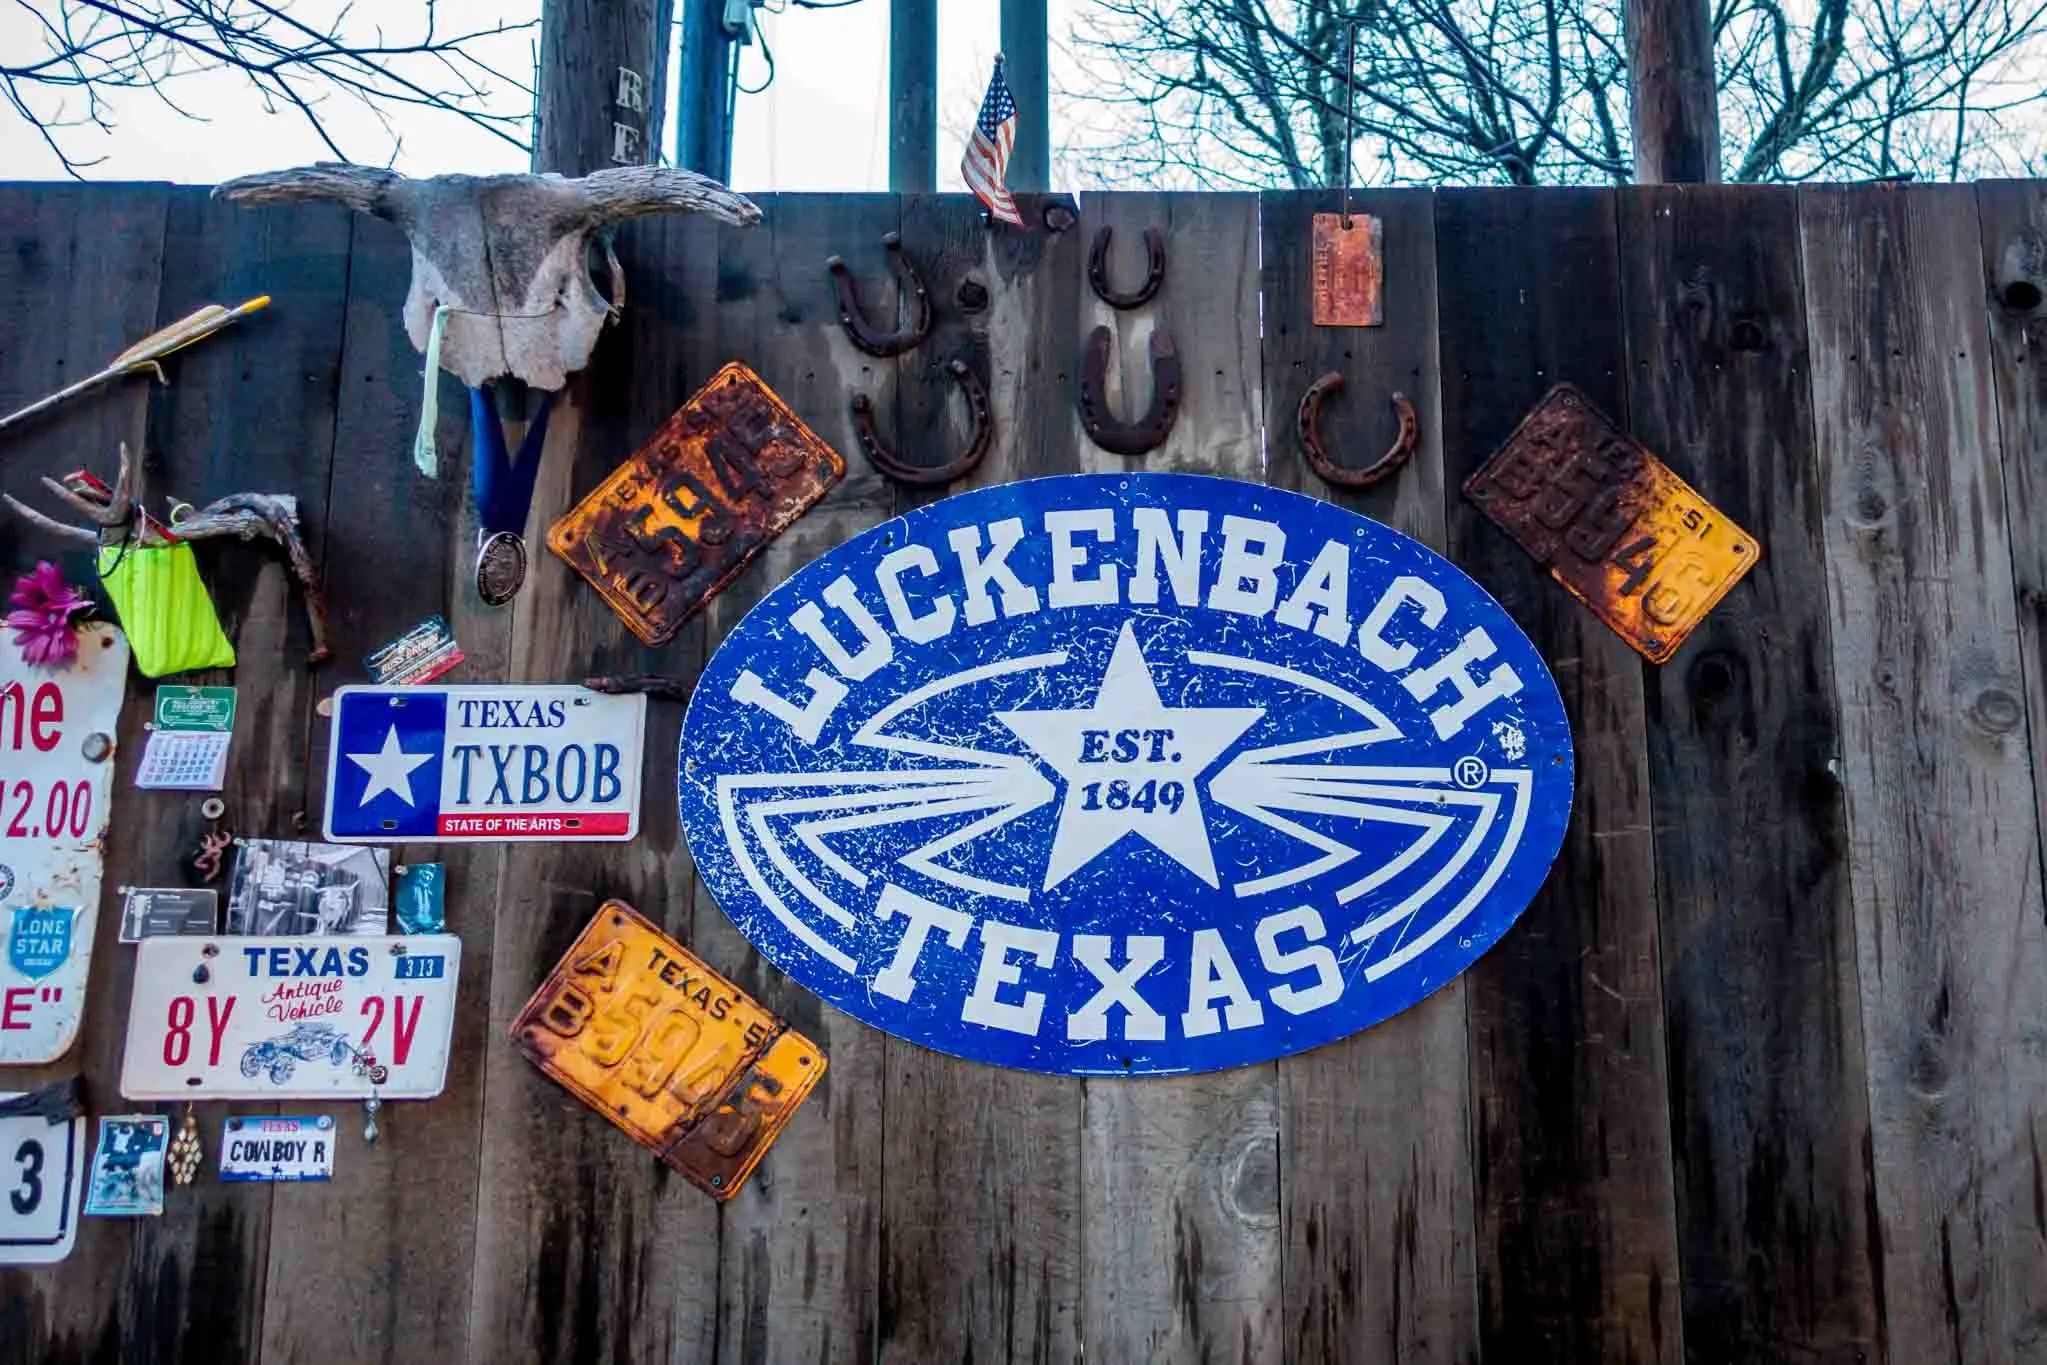 Luckenbach Texas, est. 1849